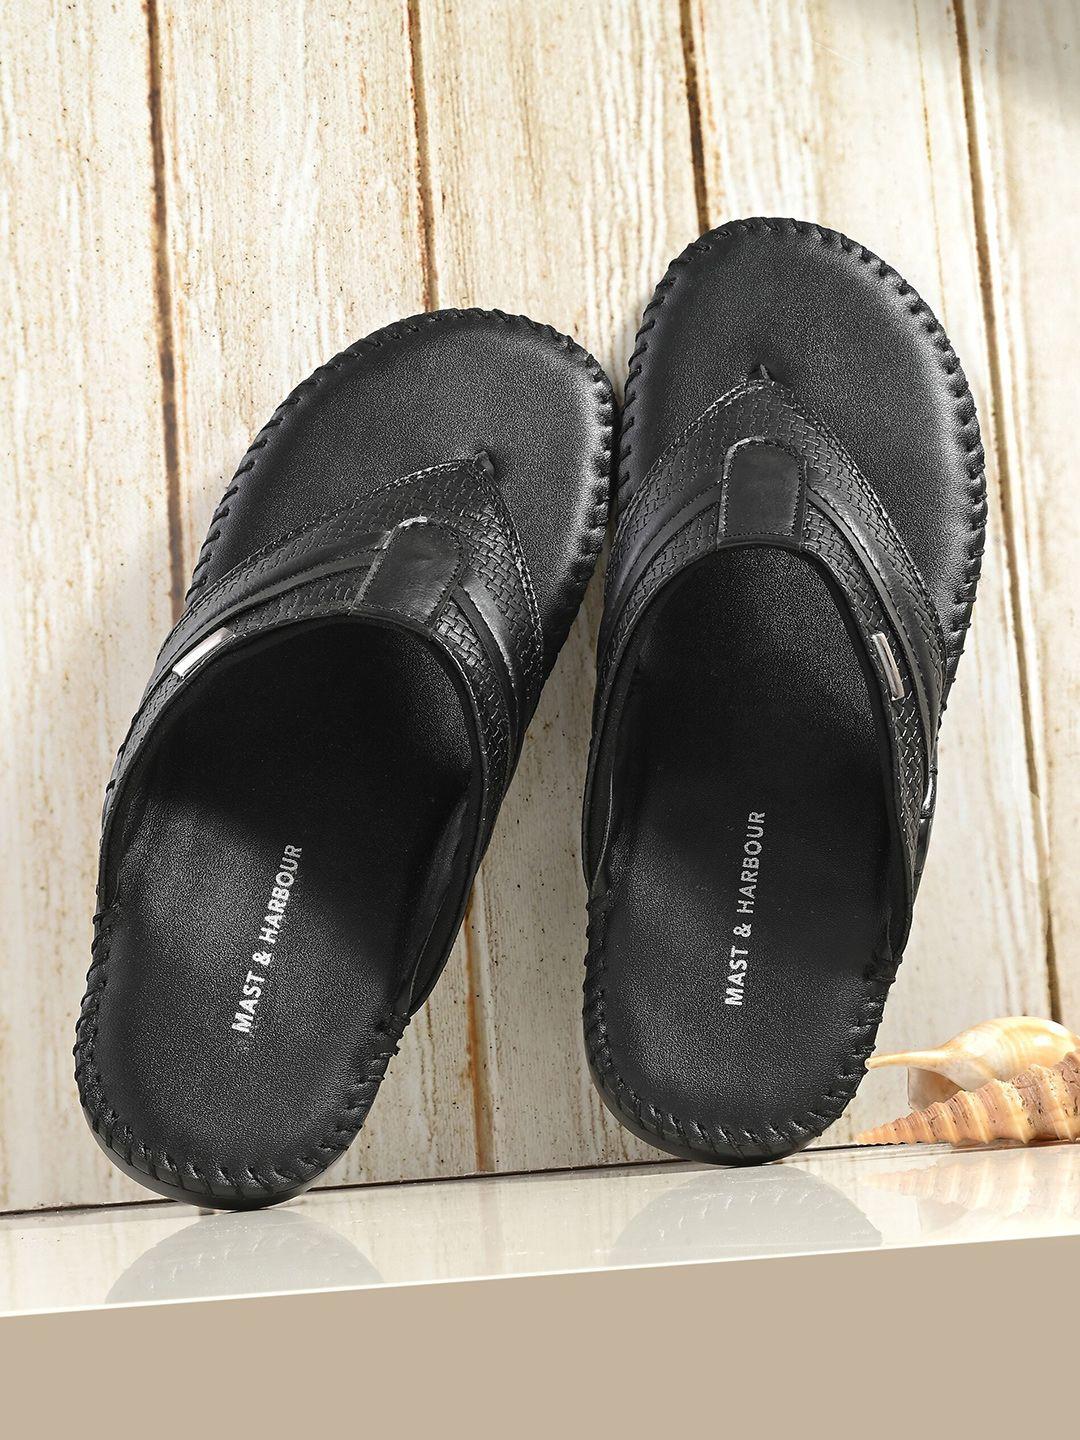 mast & harbour men black open toe comfort sandals